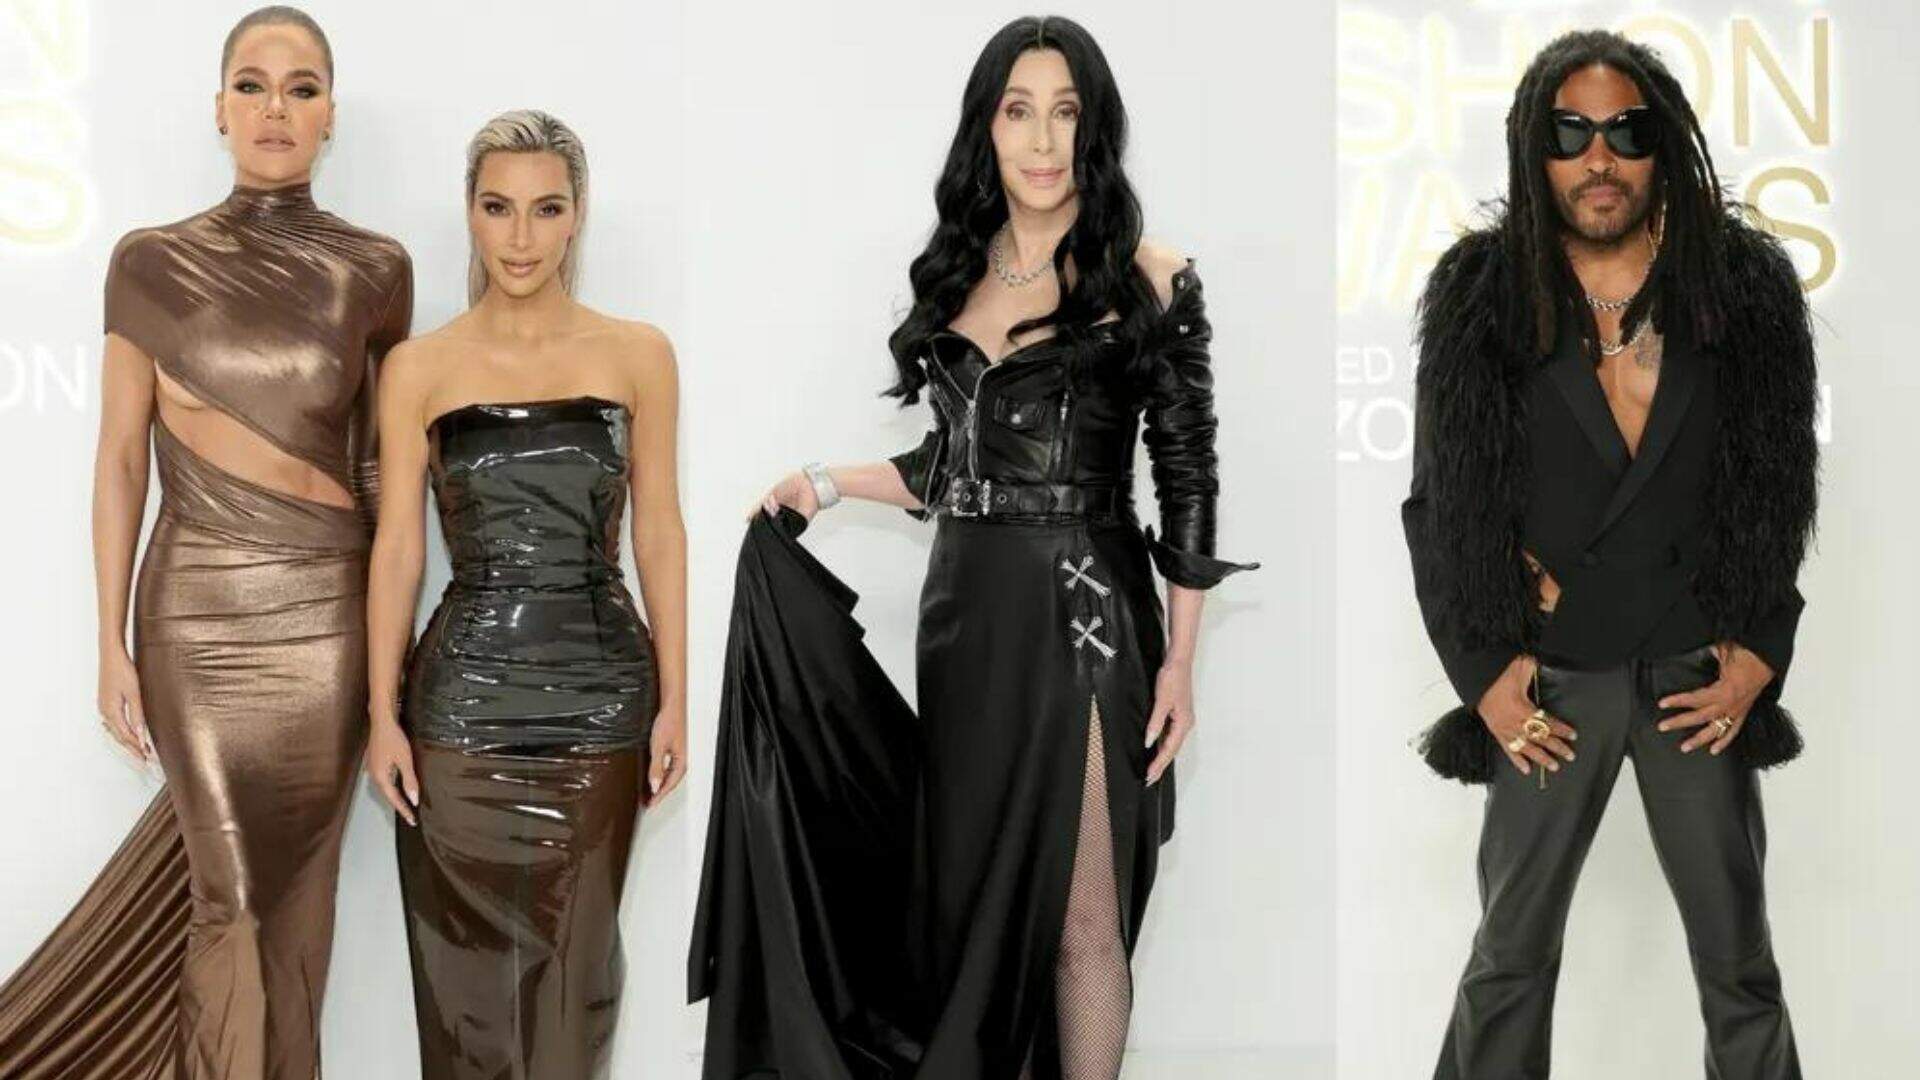 Kardashians, Cher, Lenny Kravitz e outros famosos arrasam nos looks em premiação internacional - Metropolitana FM